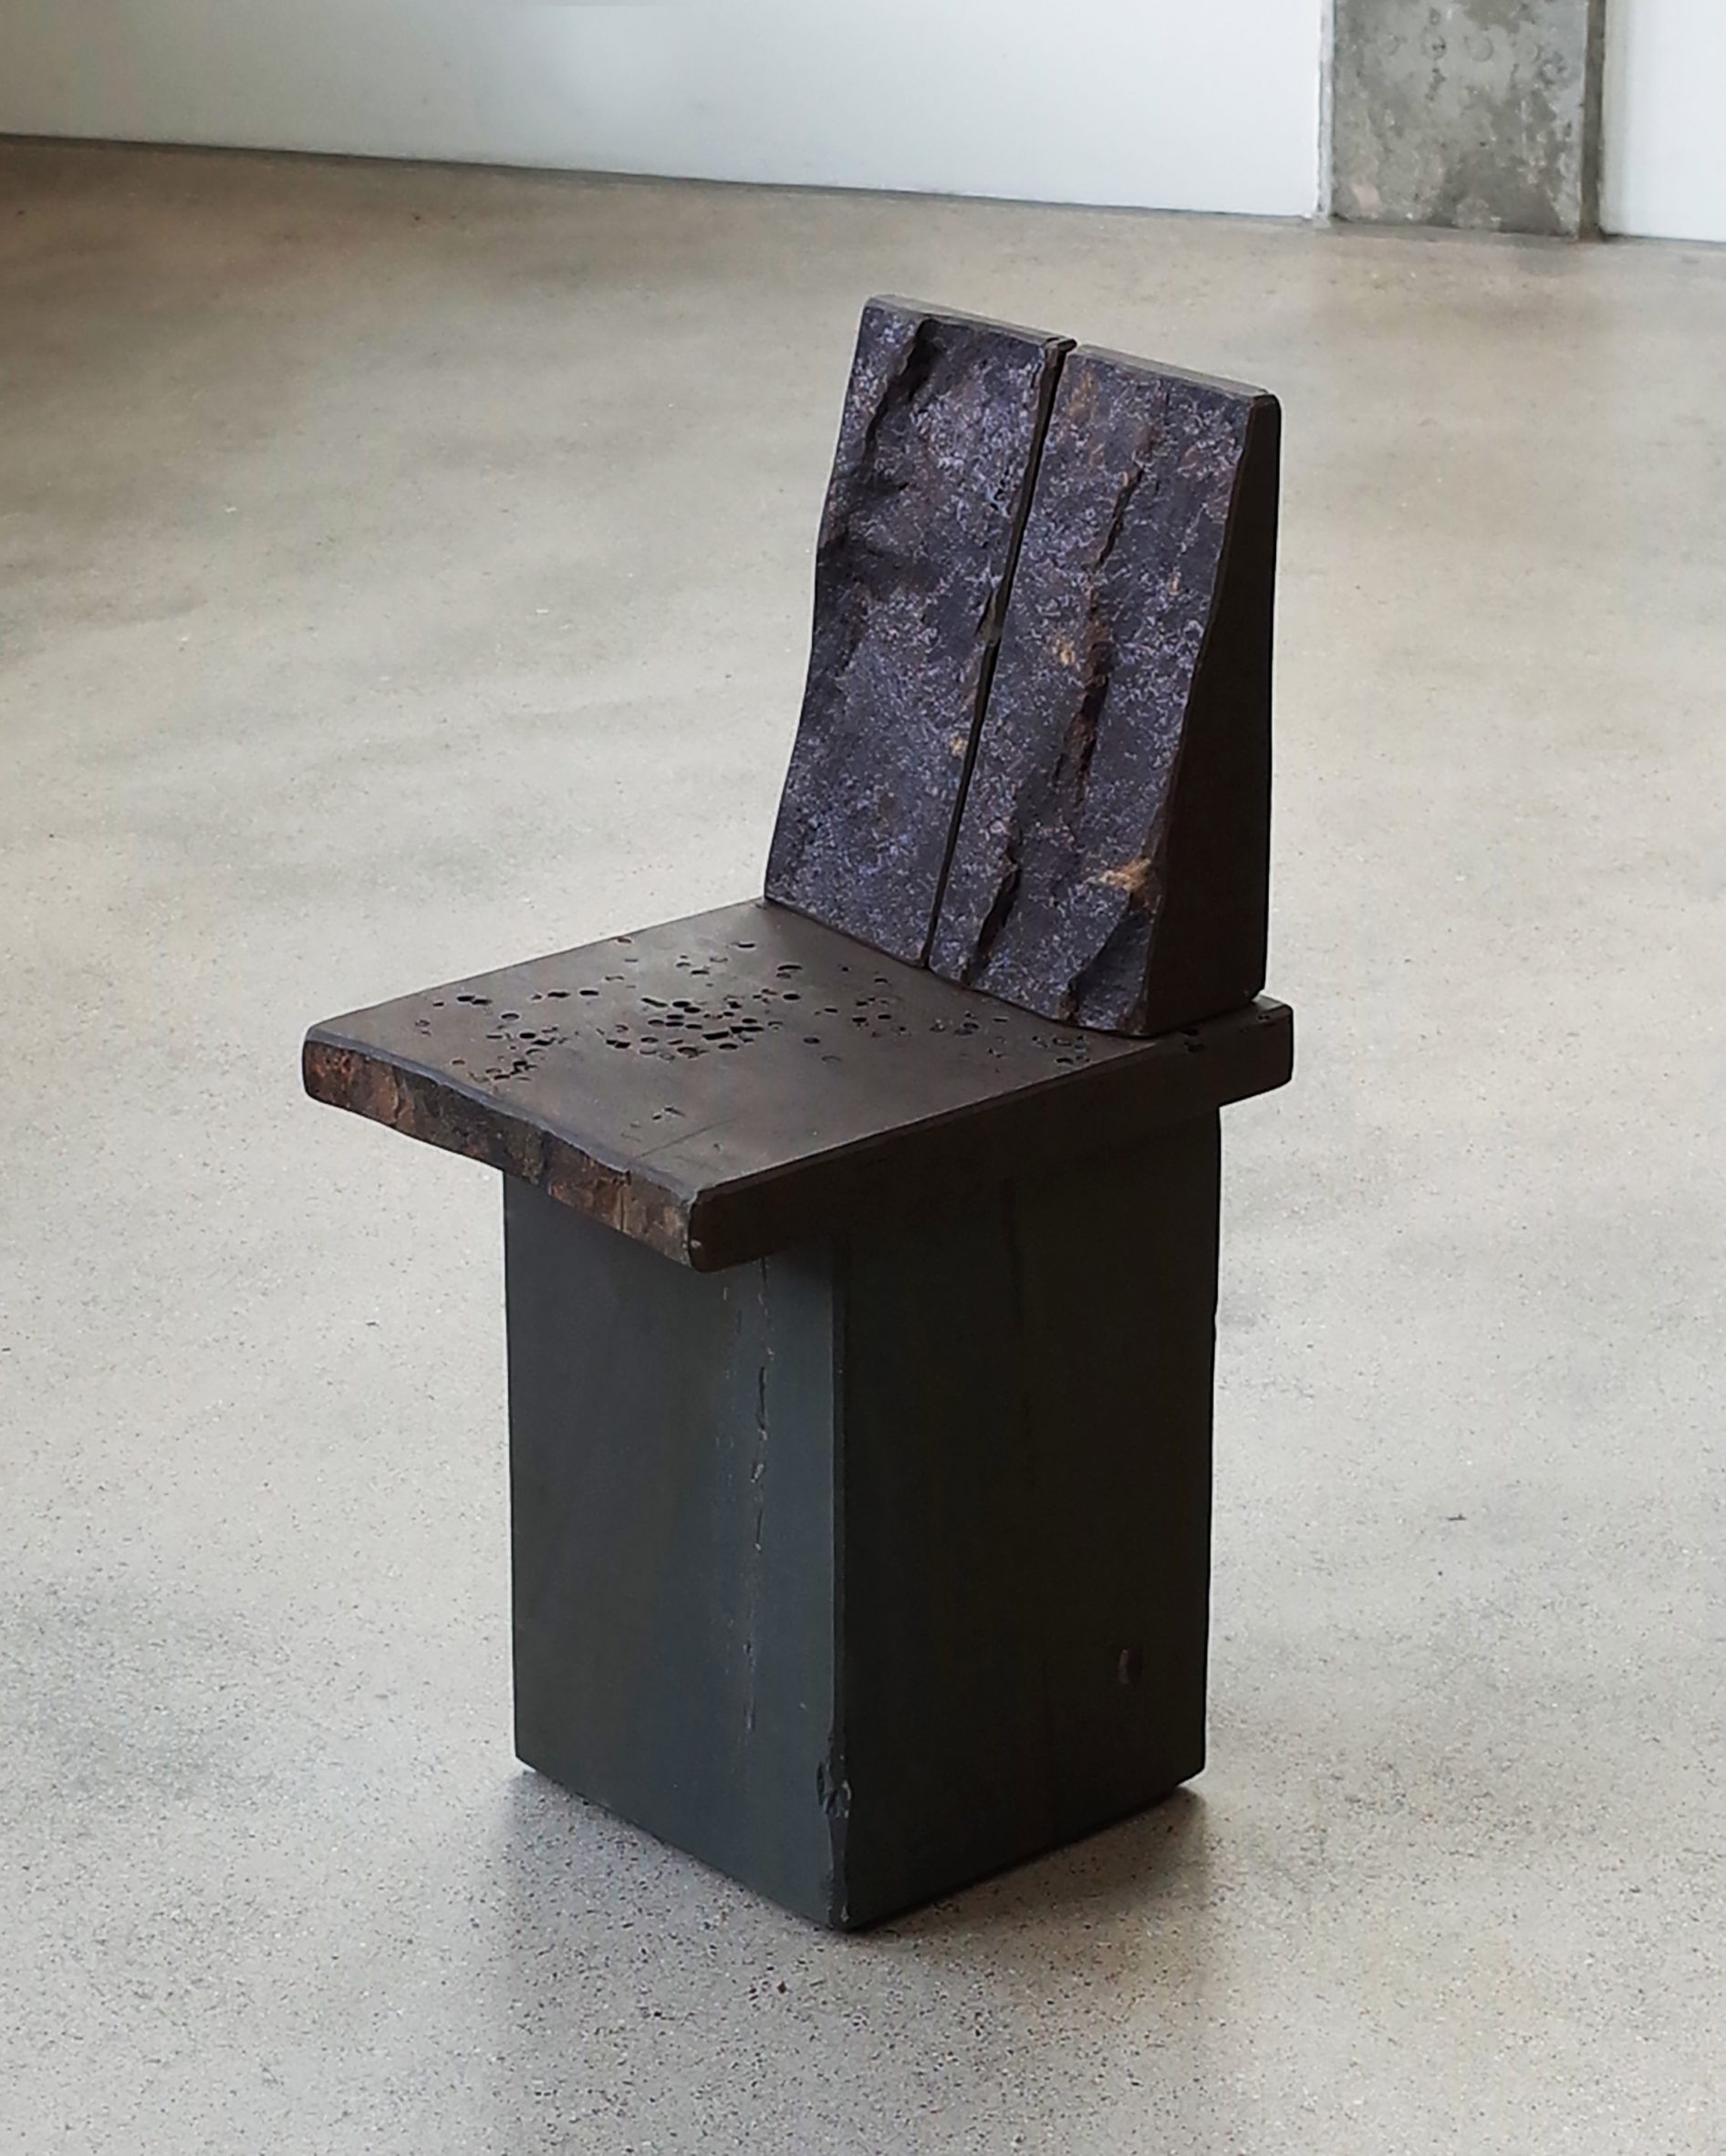 Dark-coloured sandstone chair